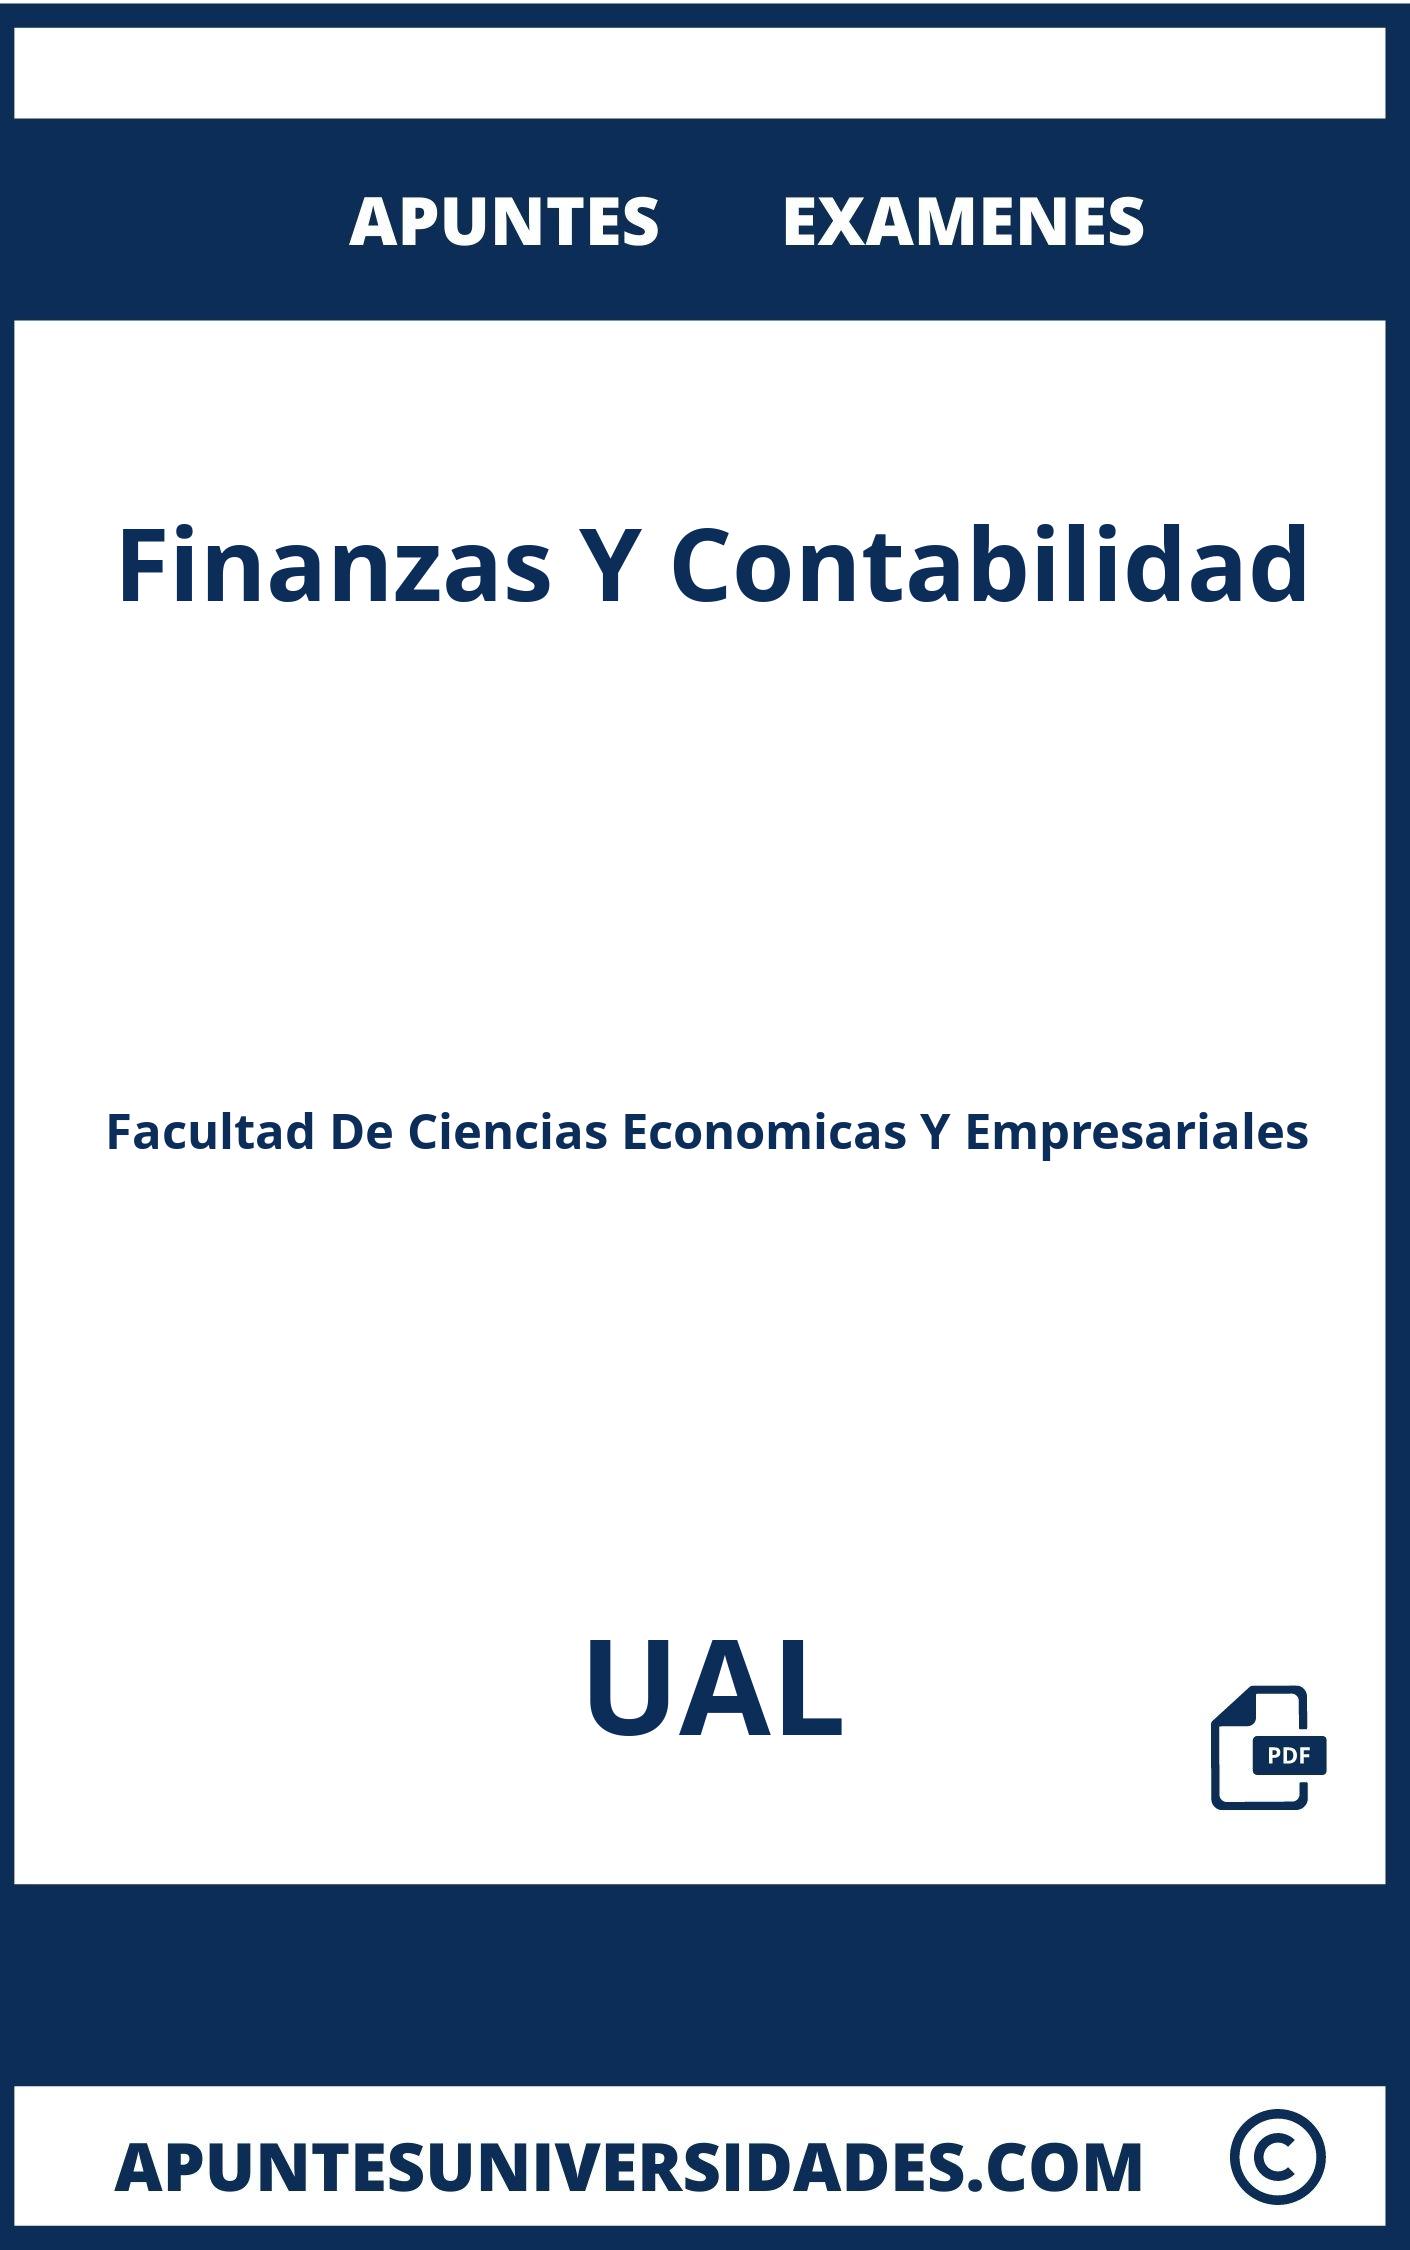 Examenes y Apuntes de Finanzas Y Contabilidad UAL